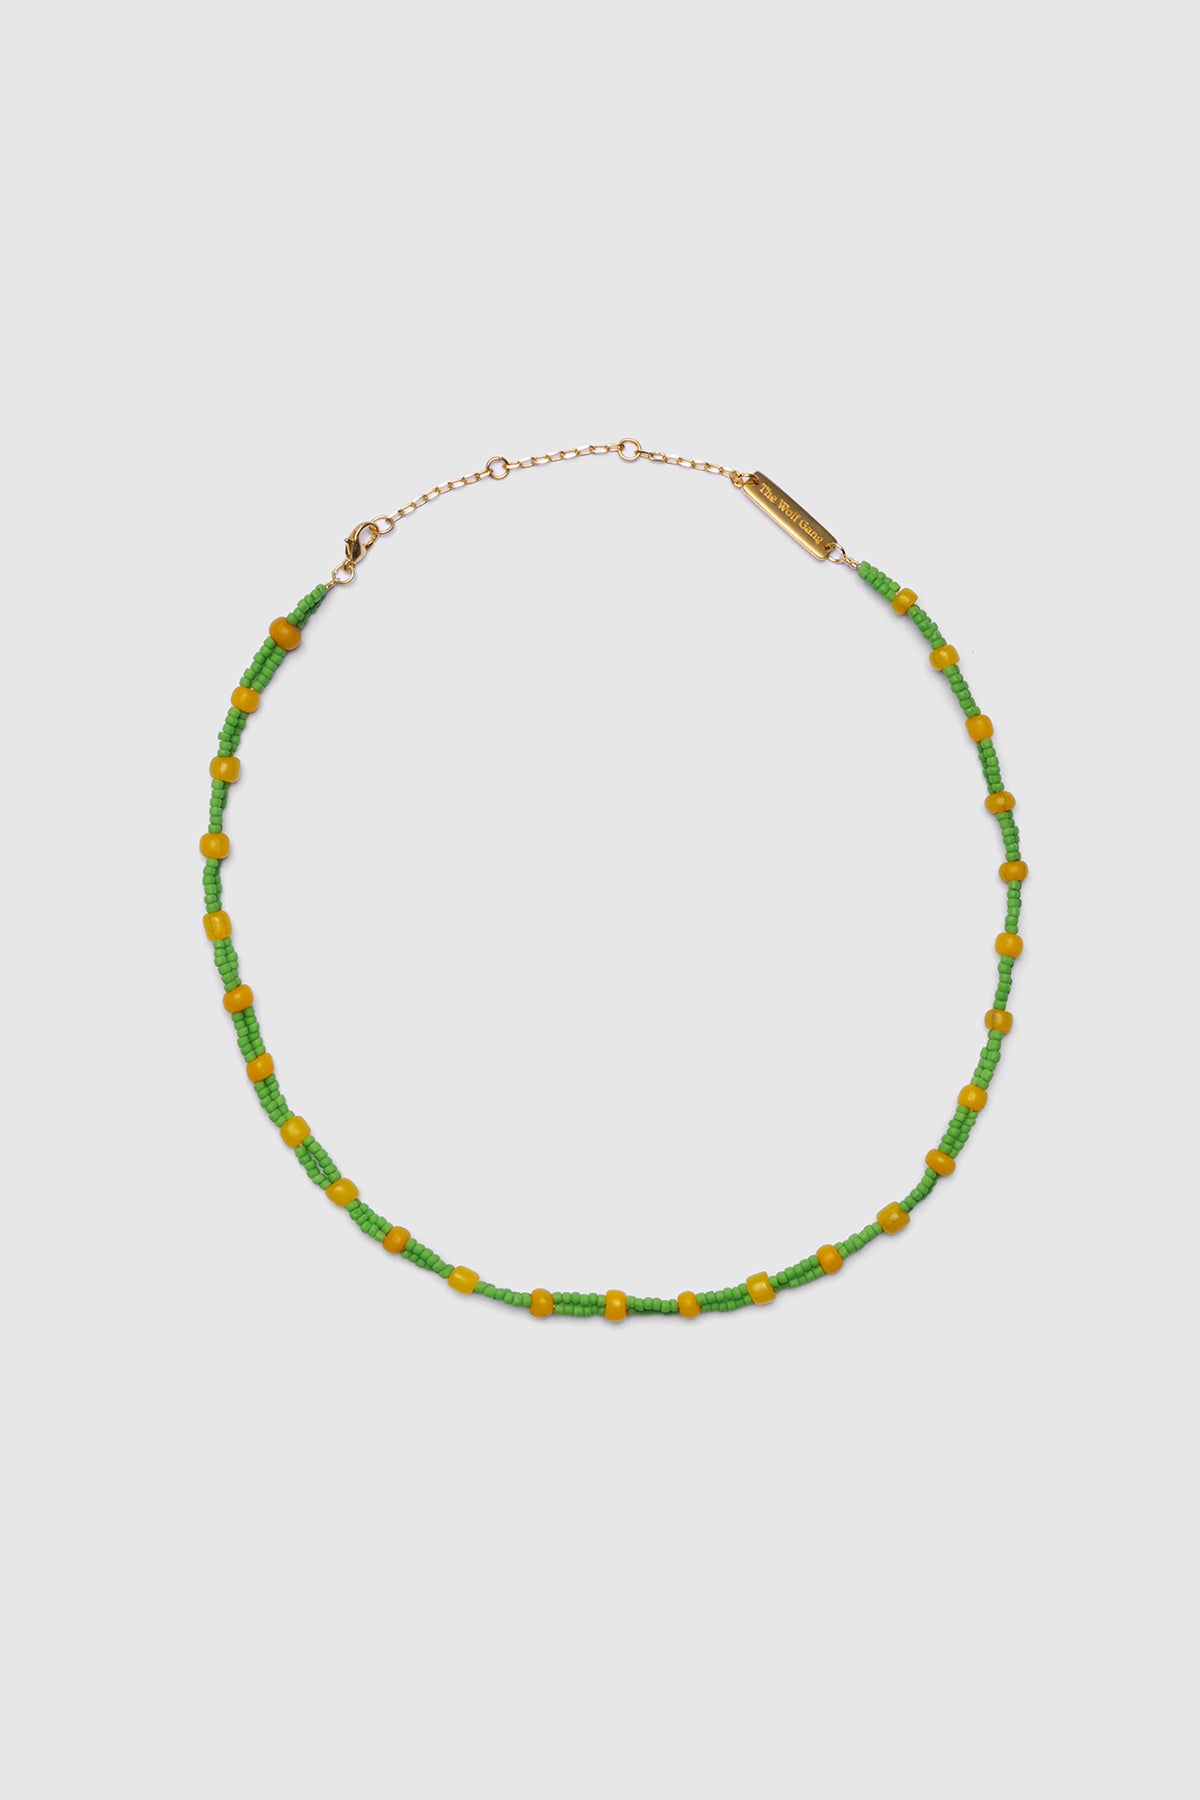 Canggu Necklace - Lime